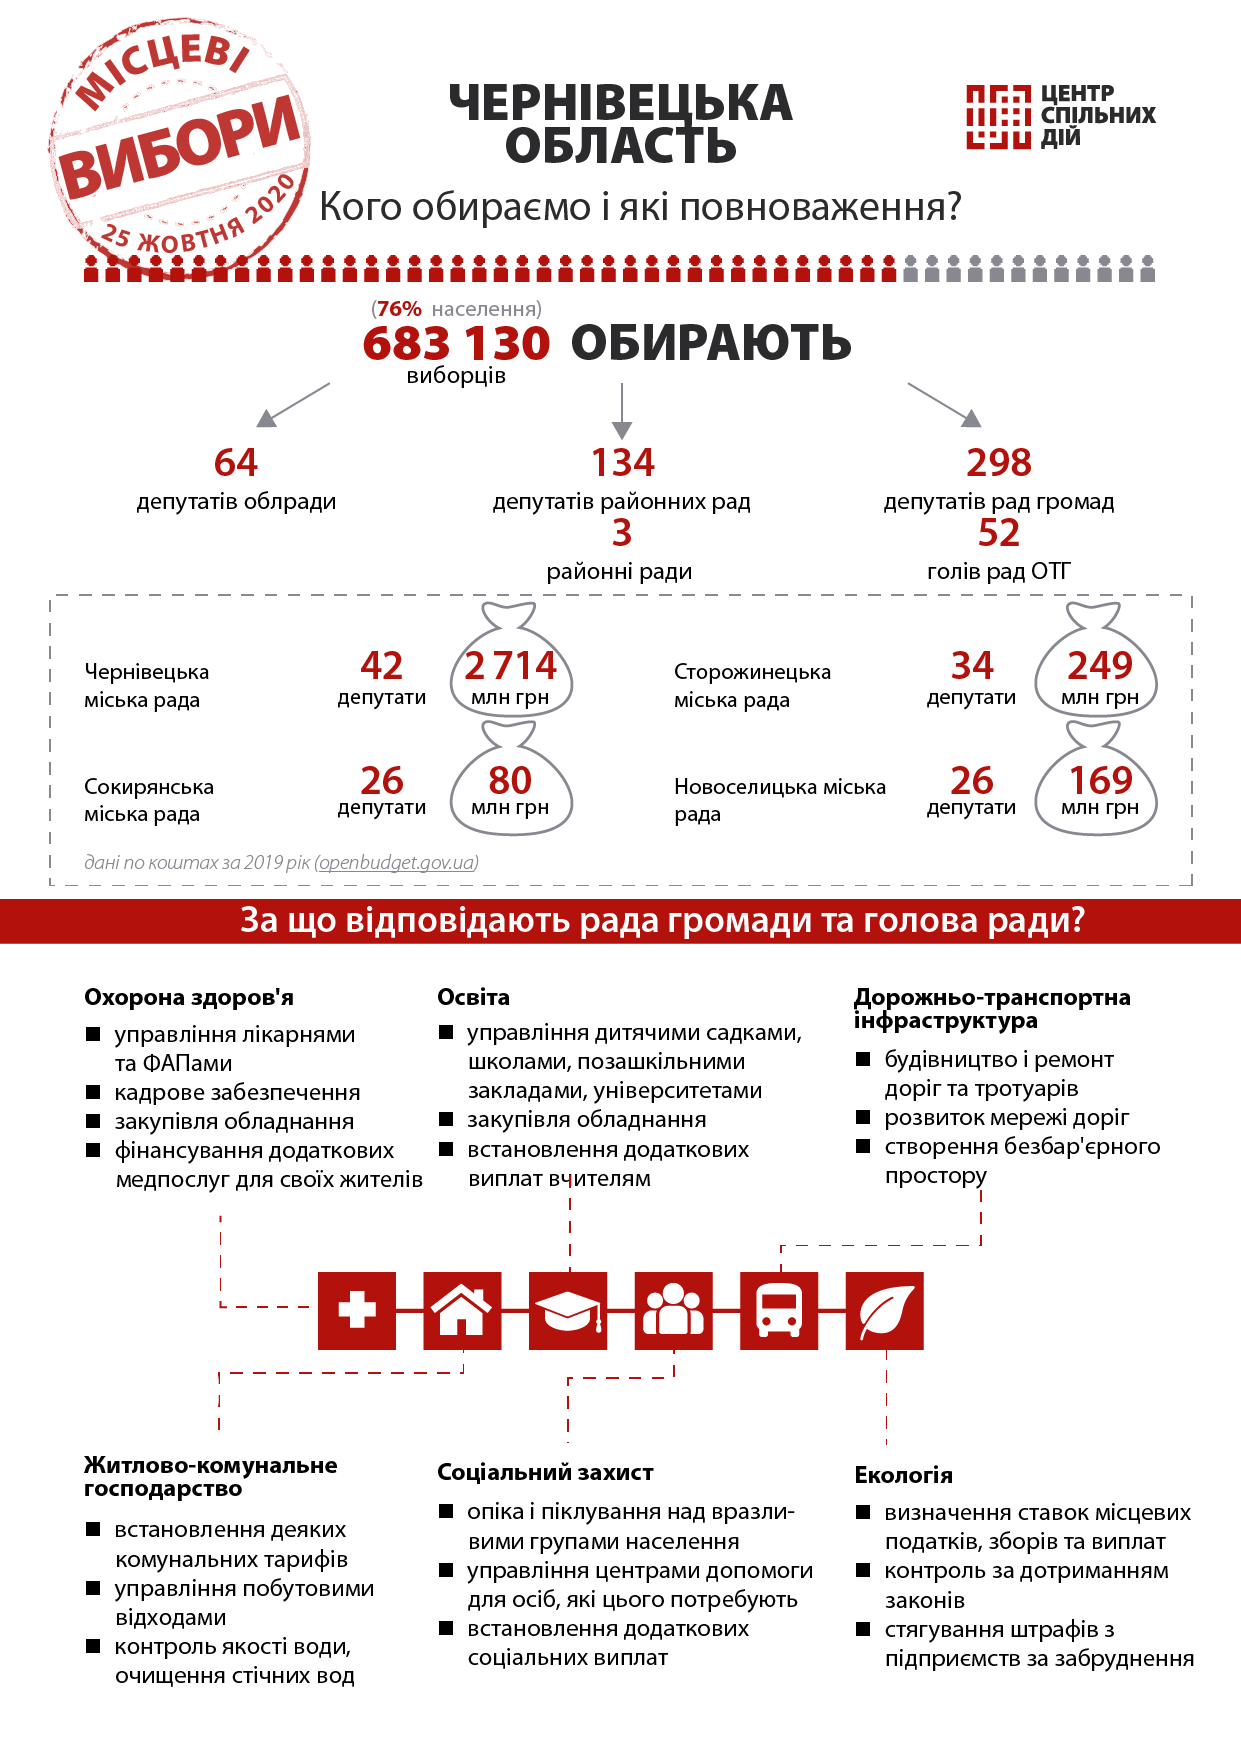 Кого мешканці Чернівецької області будуть обирати на місцевих виборах 25 жовтня й чого слід вимагати від нових обранців